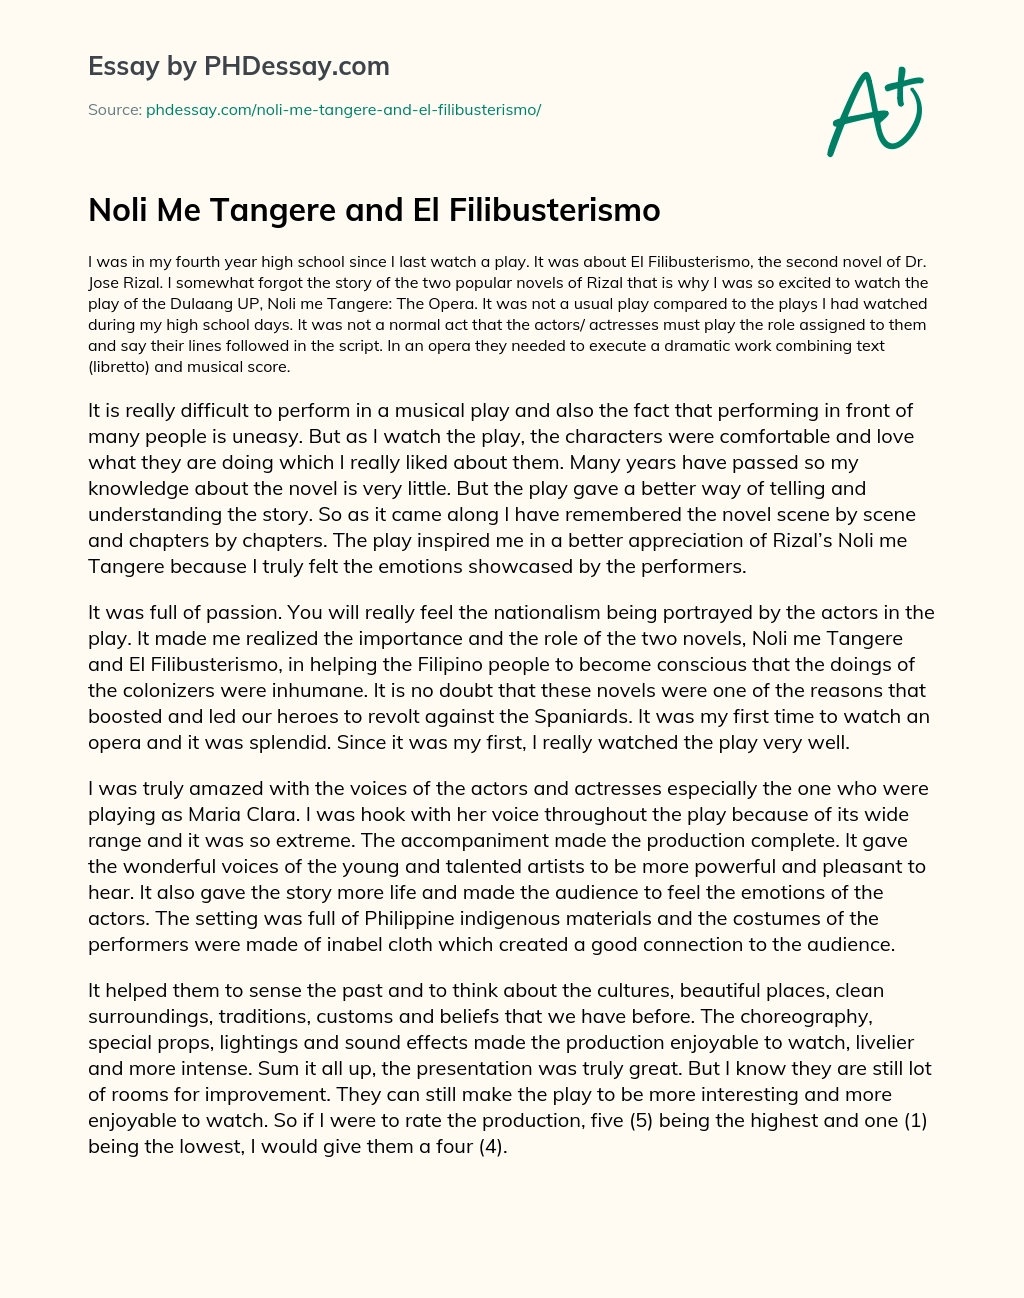 Noli Me Tangere and El Filibusterismo essay